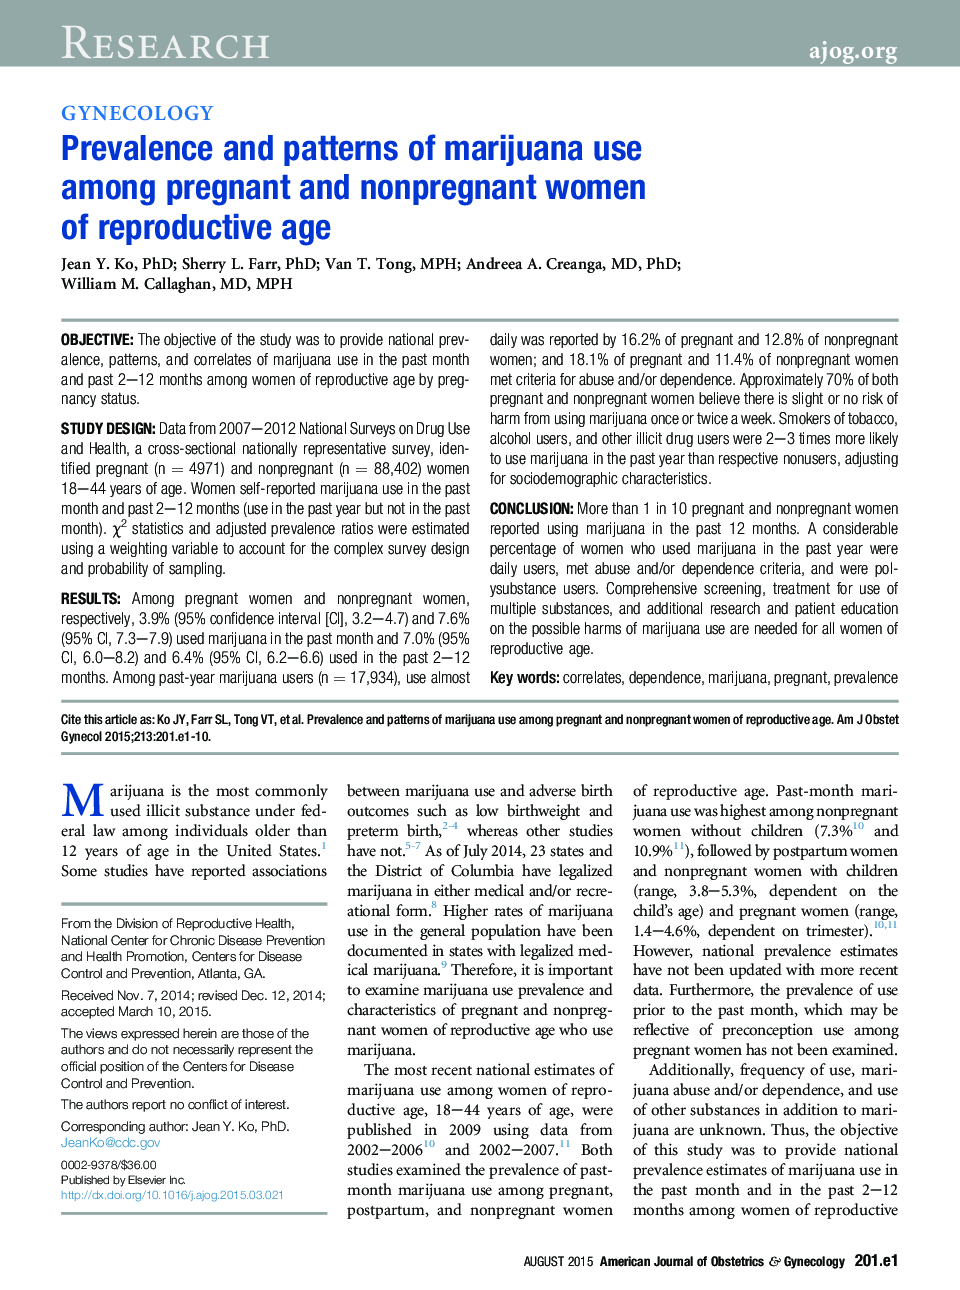 شیوع و الگوهای استفاده از ماری جوانا در زنان باردار و غیر باردار در سن باروری 